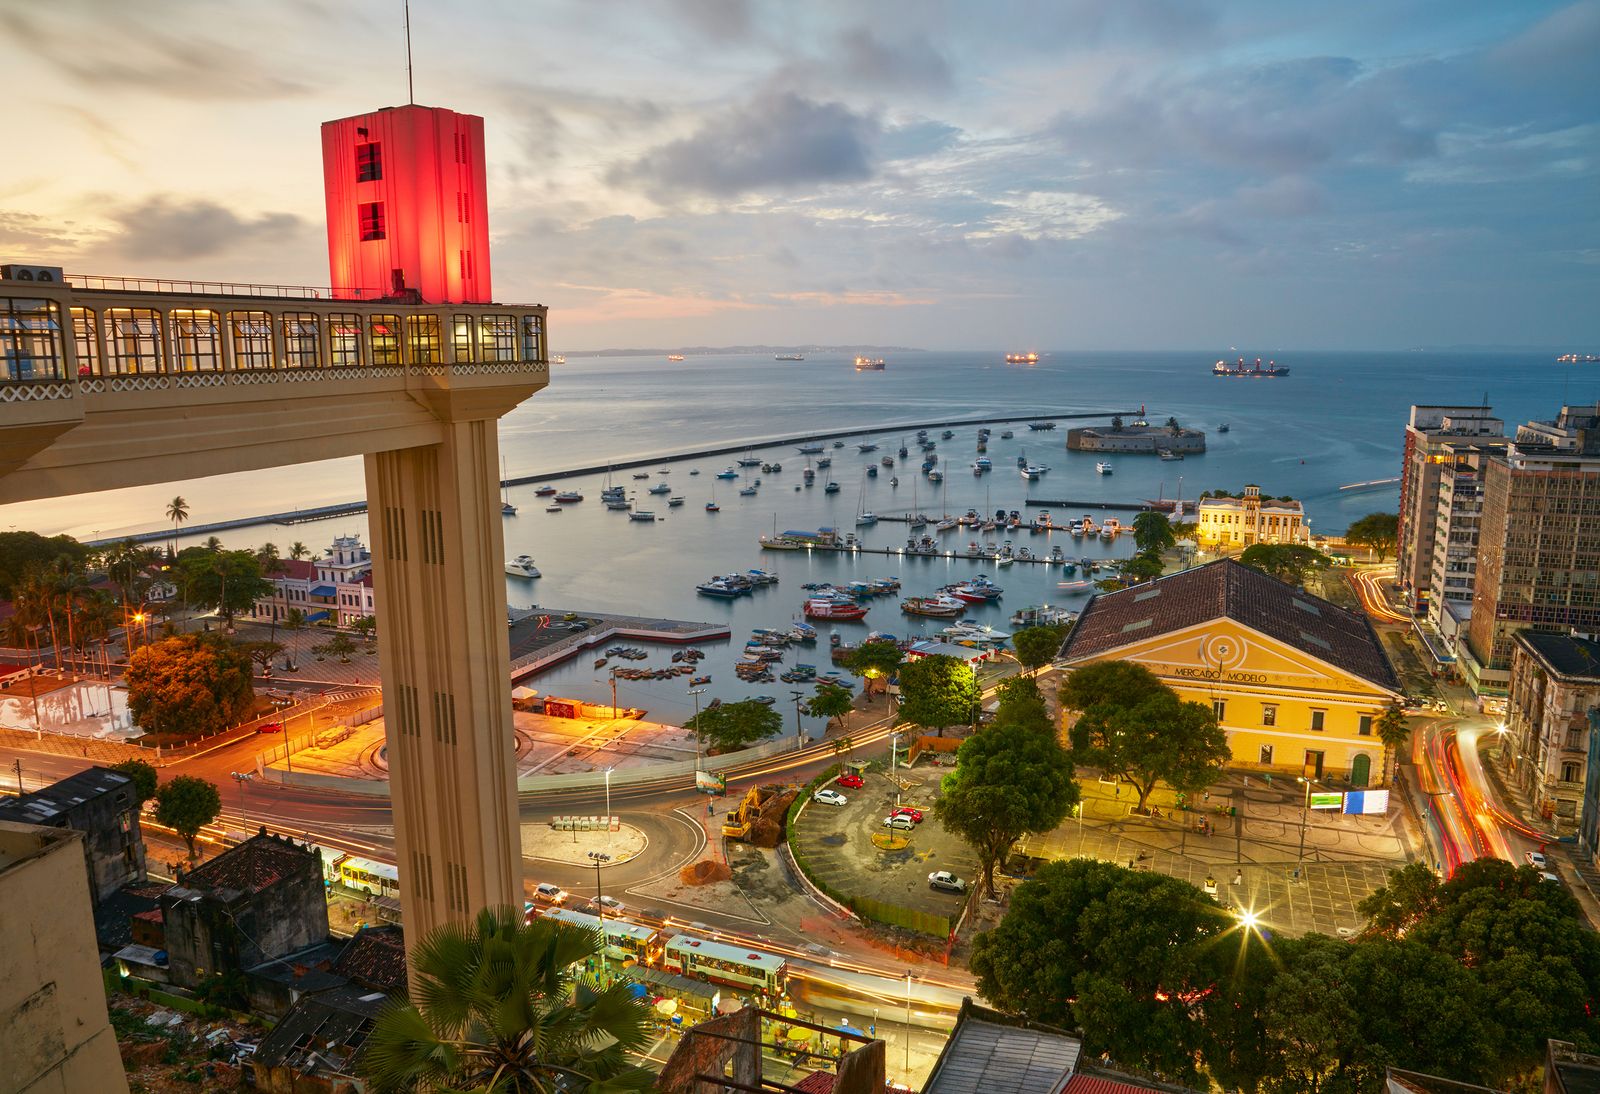 O que aconteceu com a Cidade da Bahia?